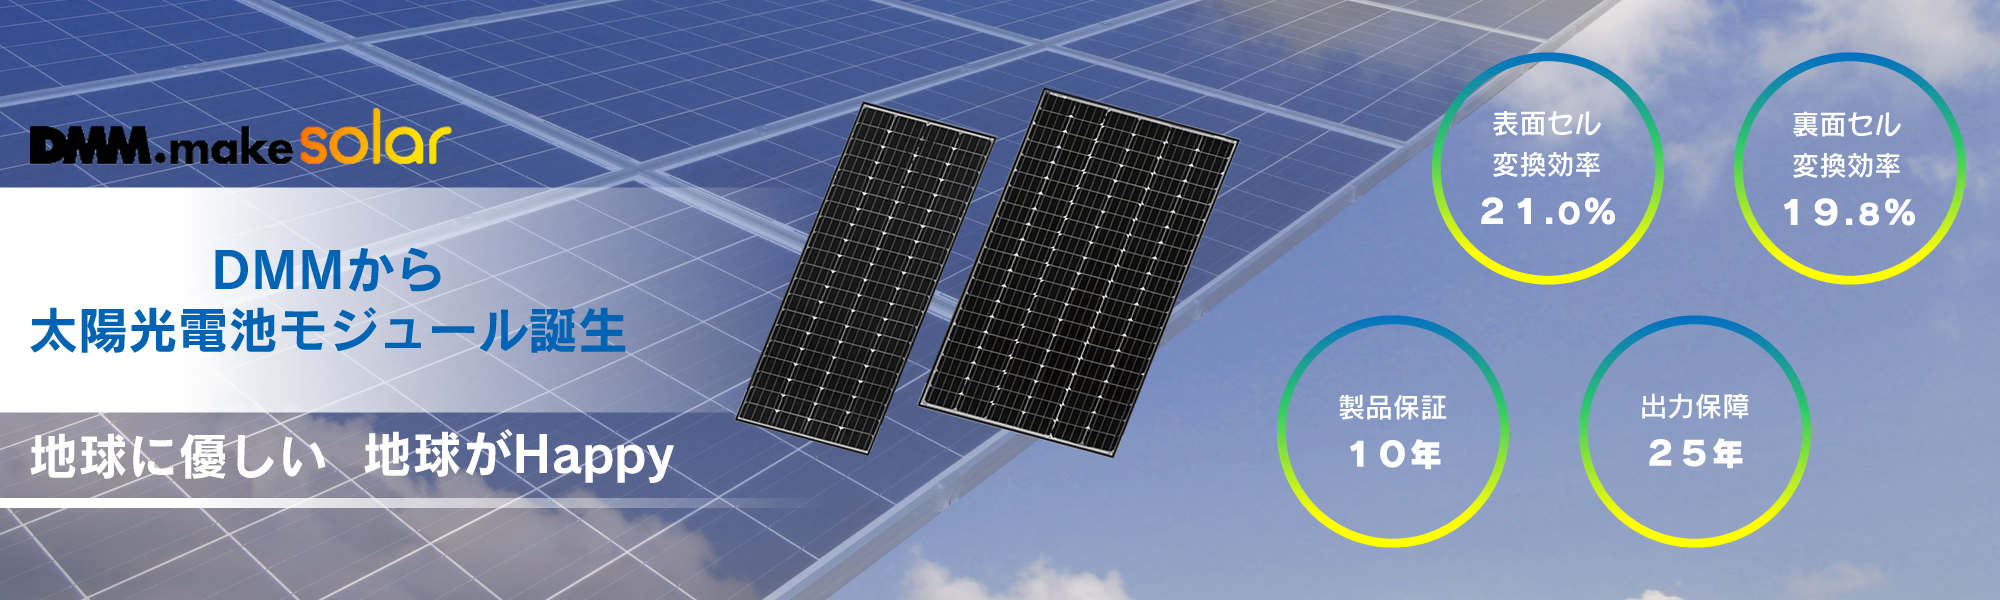 太陽光発電 モジュール製品一覧|株式会社ユナイテッドソーラー